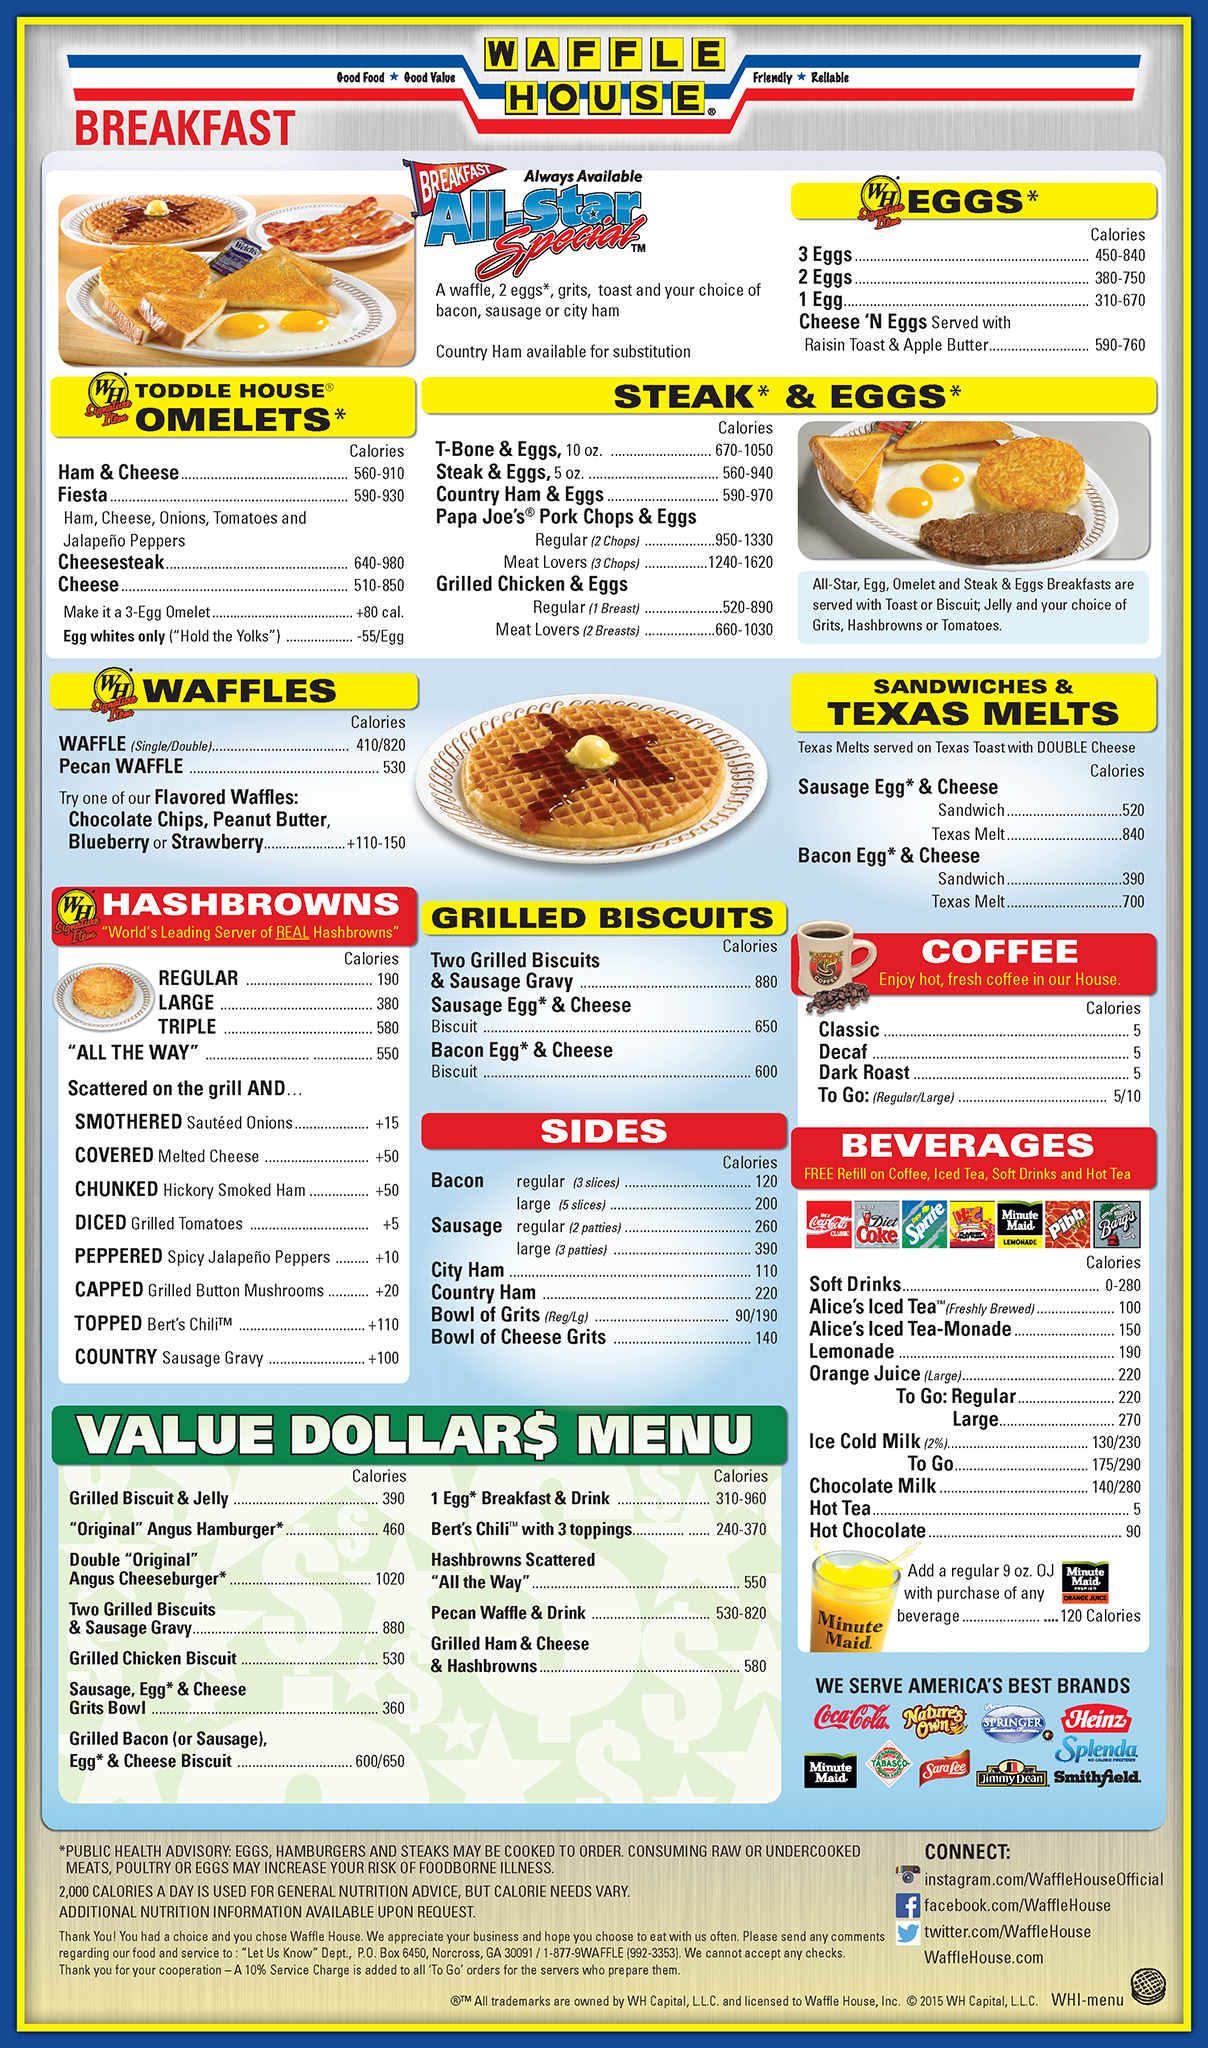 waffle house menu nutrition